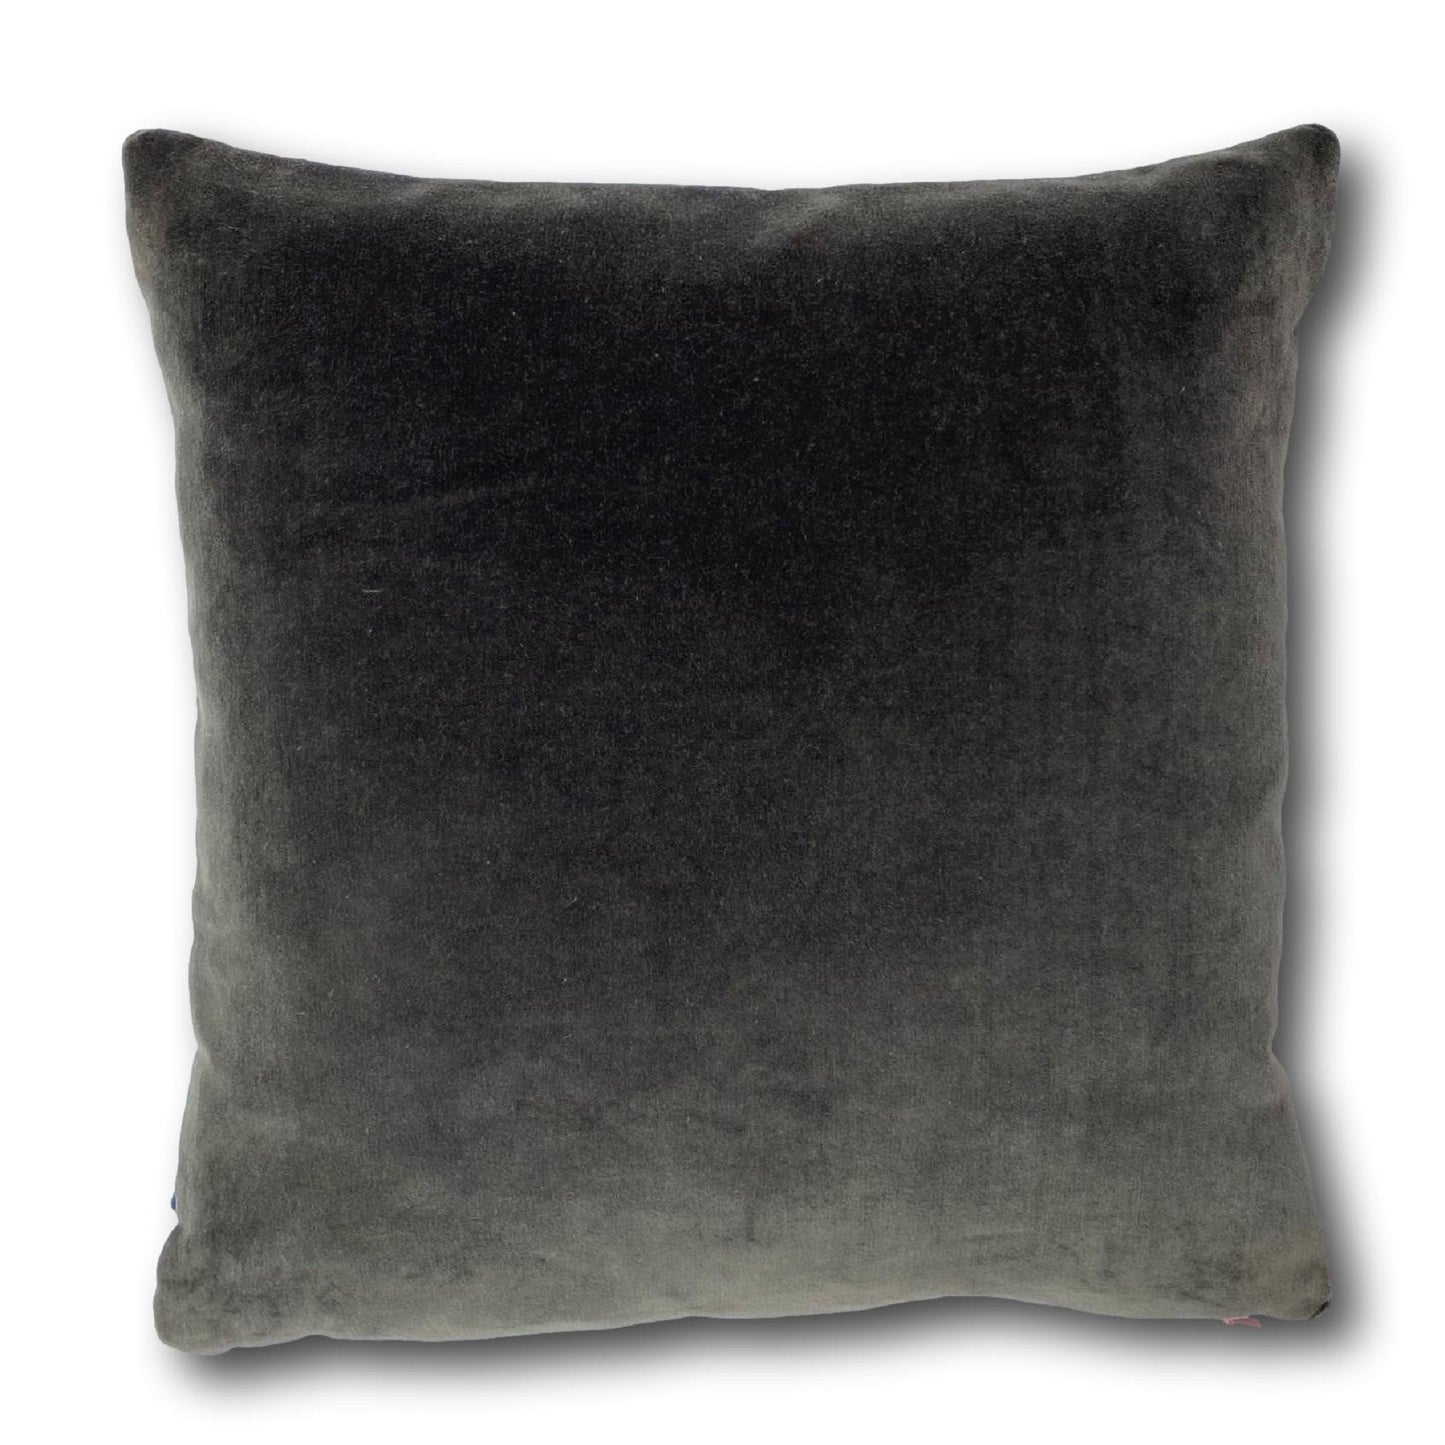 Burnt Orange Velvet Cushion Cover with Dark Grey